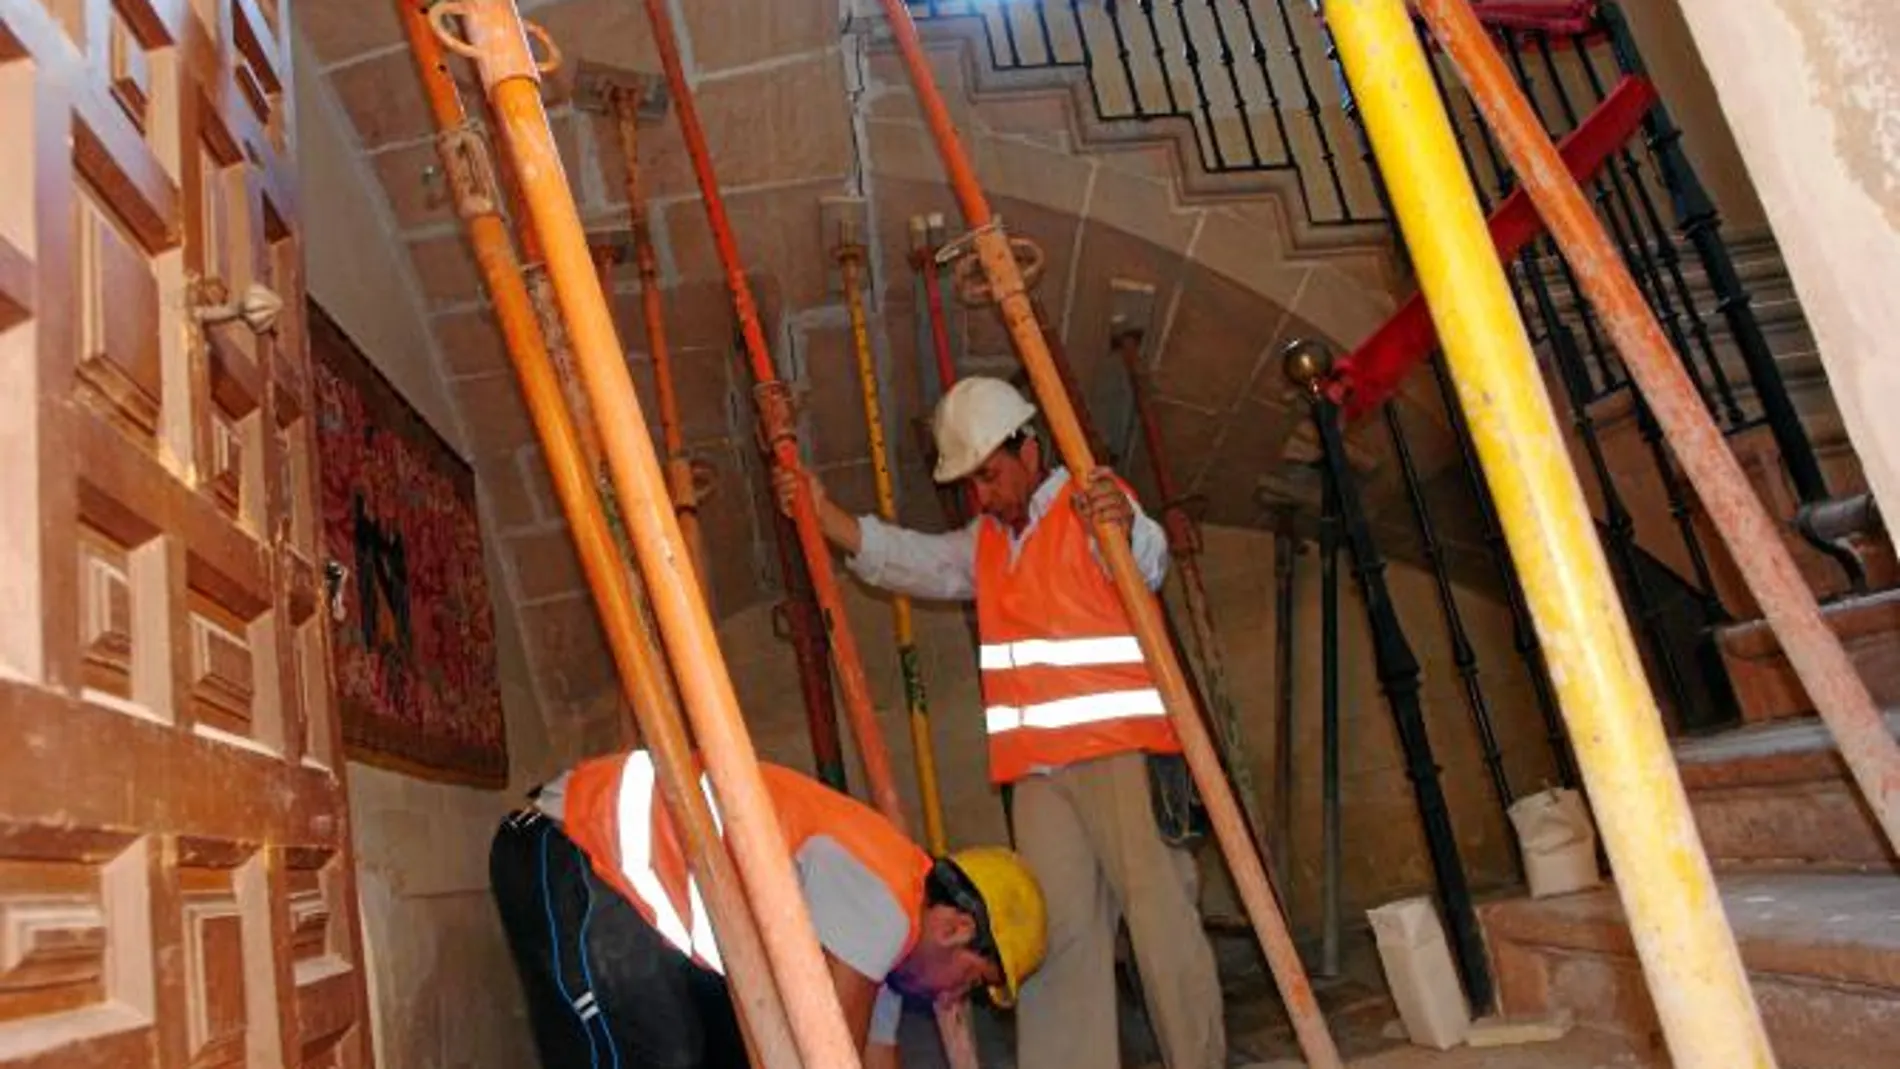 Los técnicos realizan obras de mantenimiento en diversos inmuebles de la ciudad lorquina